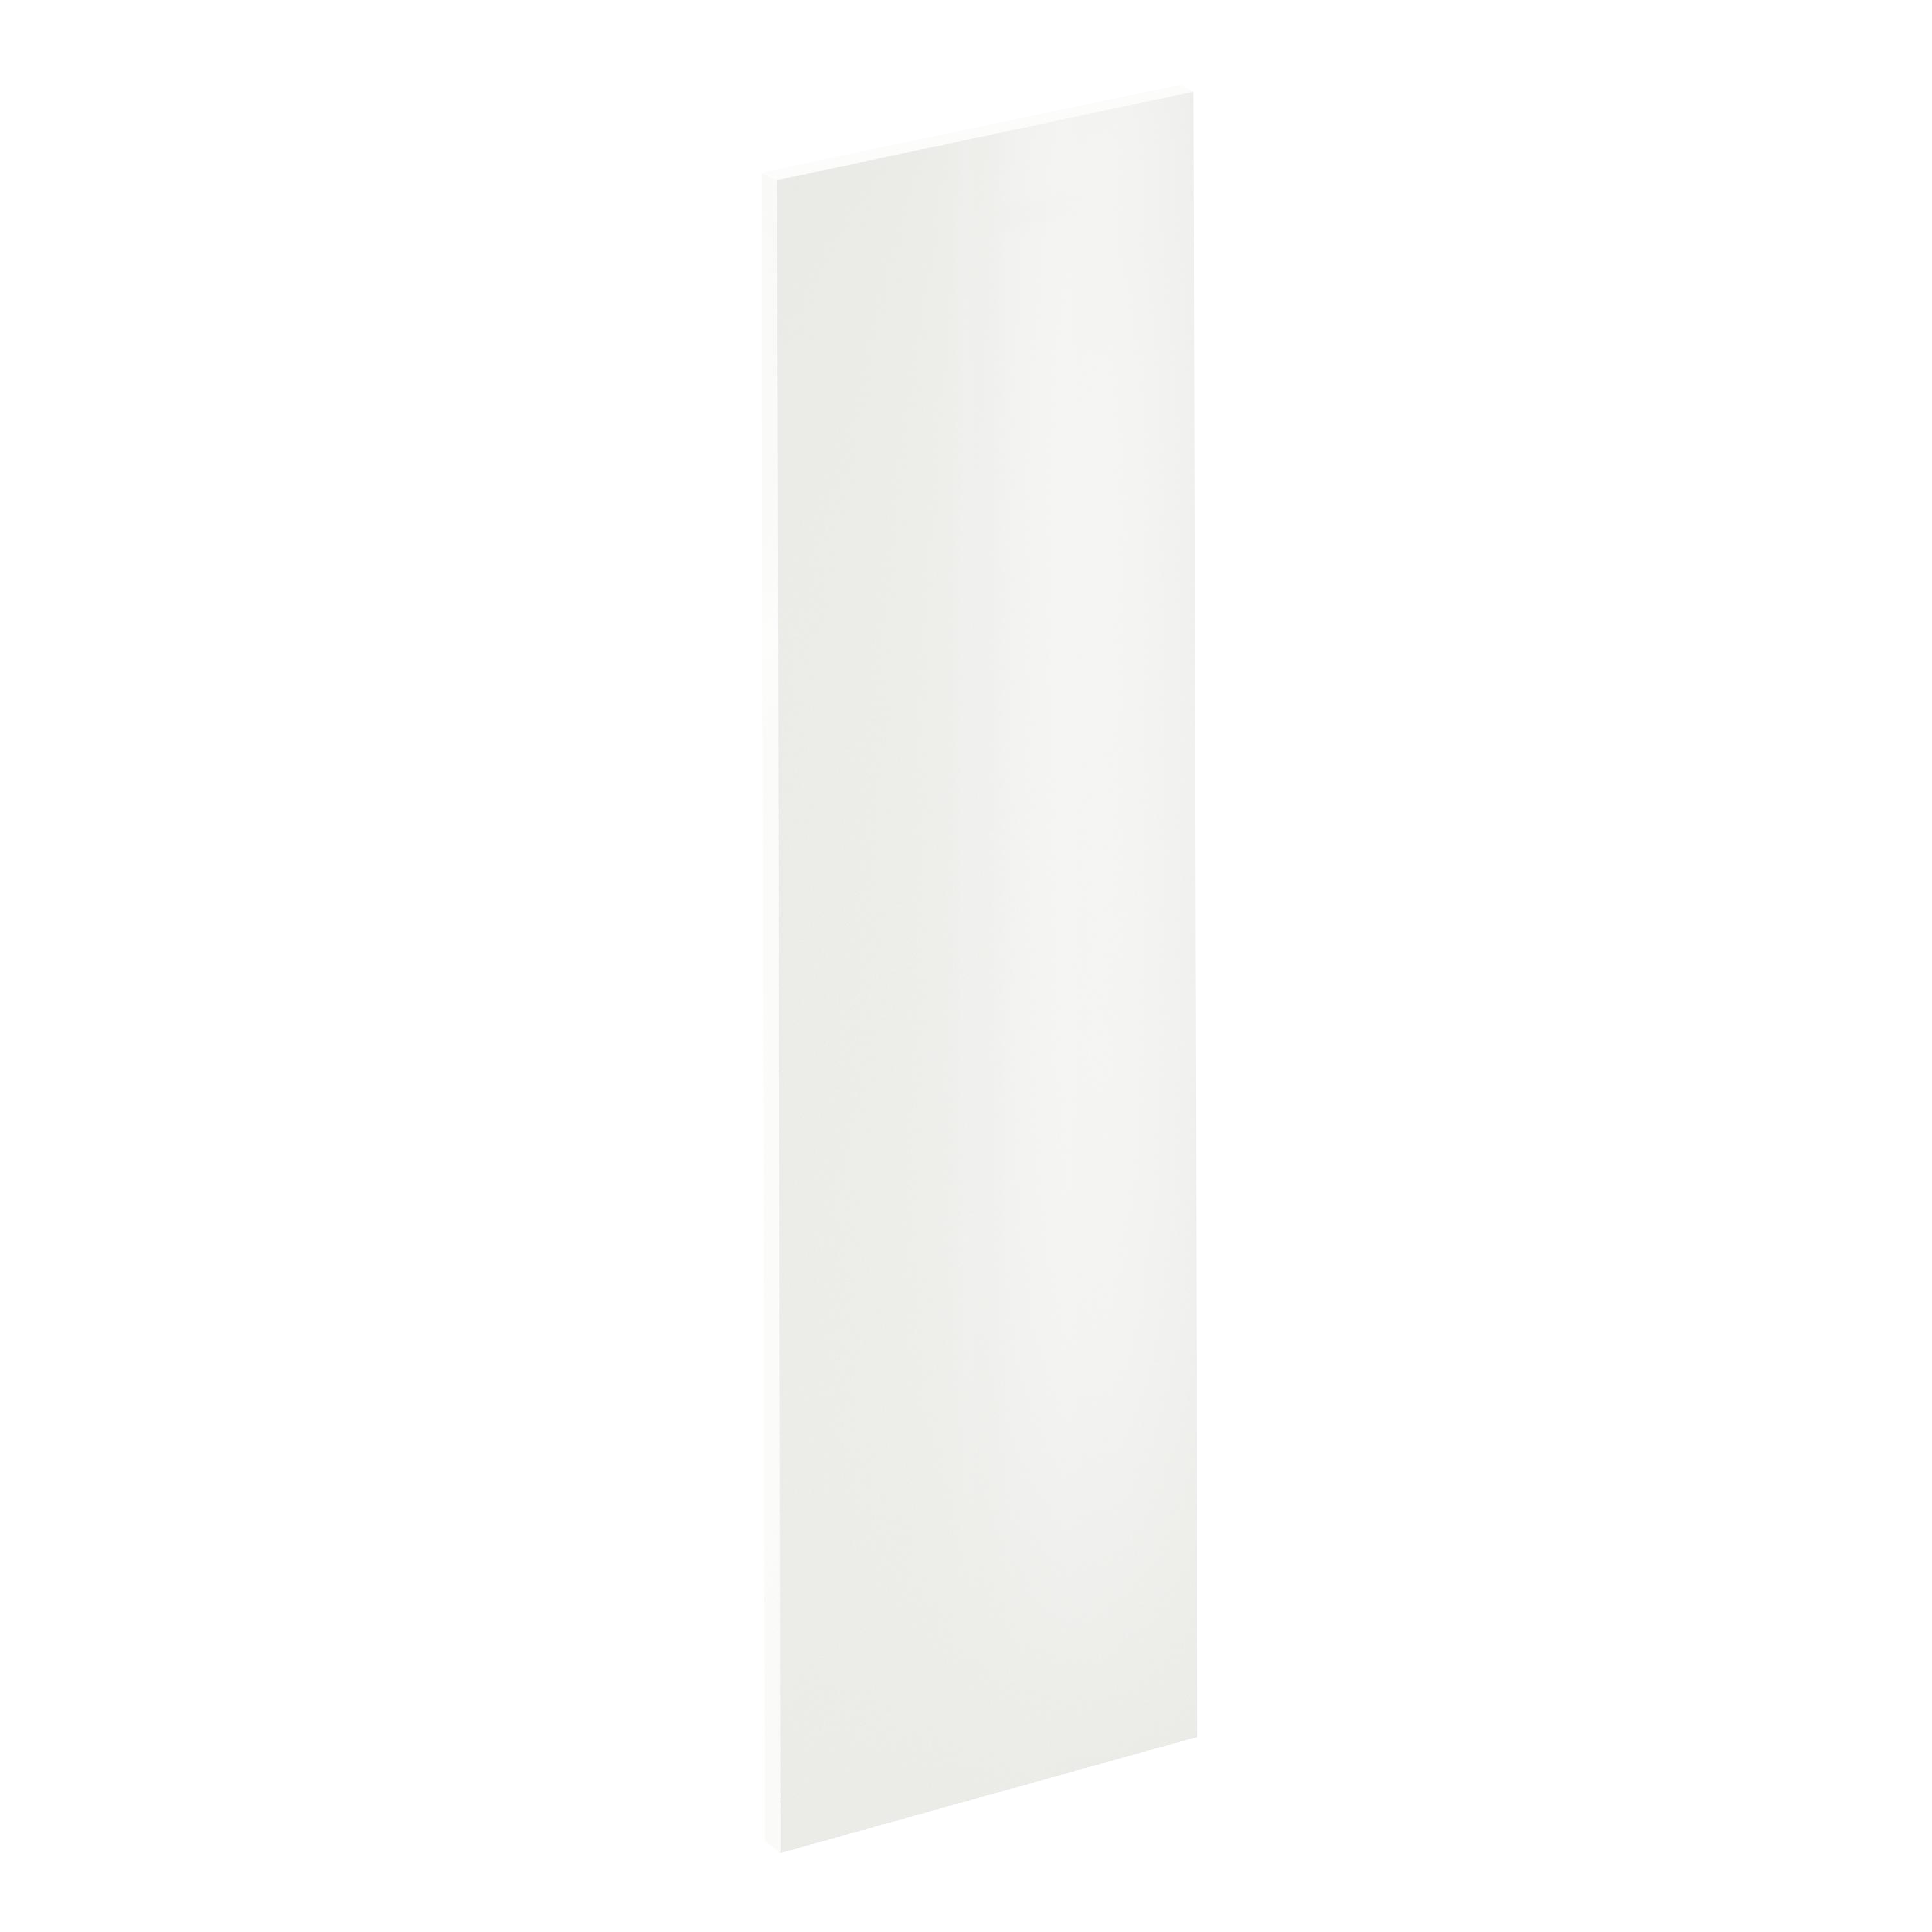 Lote de 2 puertas mueble de cocina sevilla blanco brillo h 102.4 x l 29.7 cm